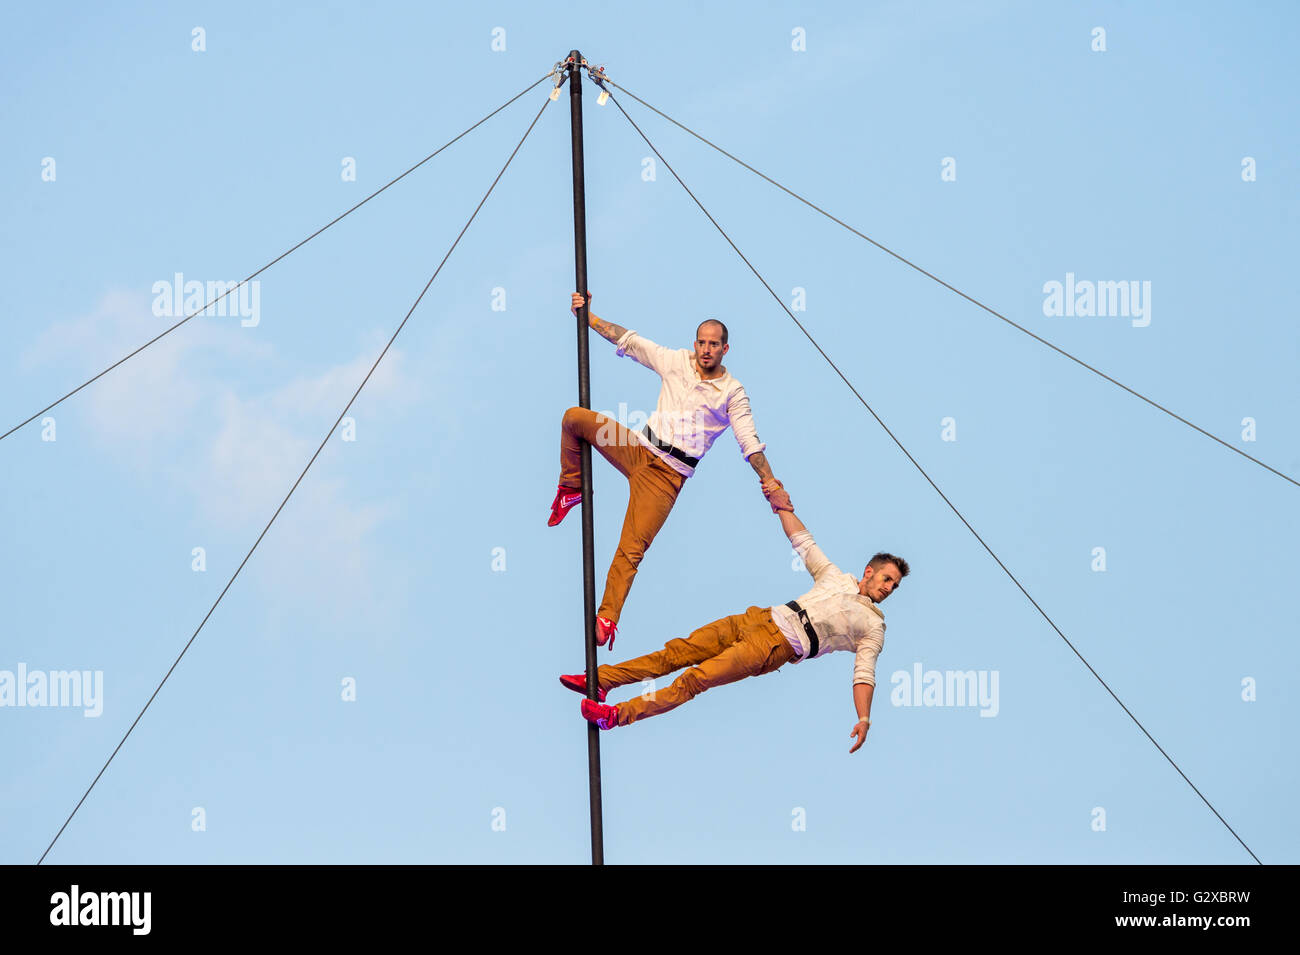 Festival Montréal complètement cirque 'Duels' Show à la place Émilie-Gamelin (2015) - Mât chinois, symbole de confiance et d'amitié Banque D'Images